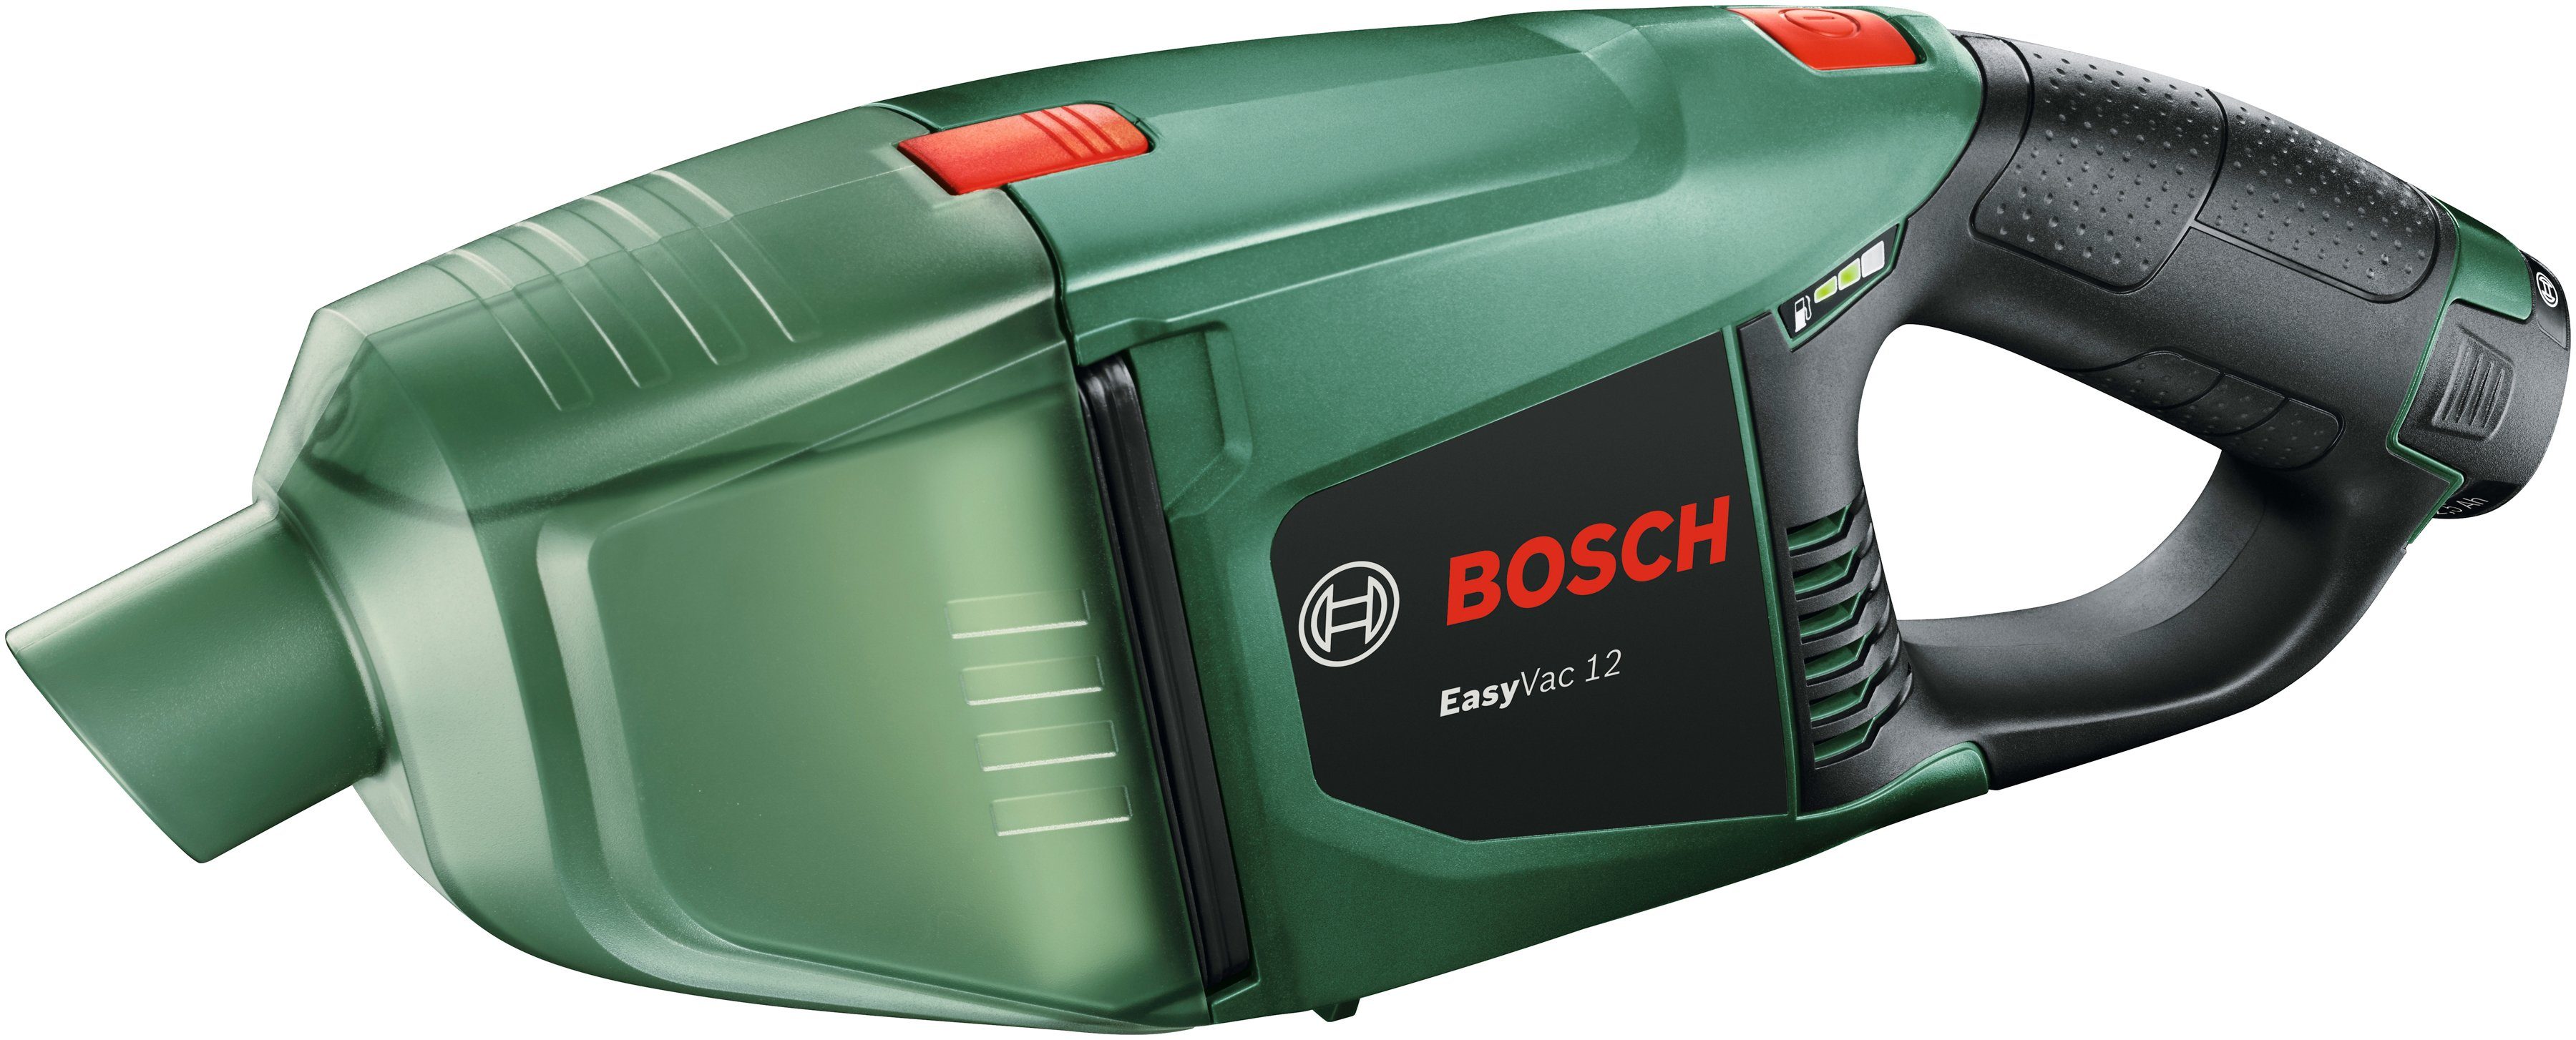 Bosch Home & Garden Akku-Handstaubsauger beutellos, 12, EasyVac V, Akku 12 mit